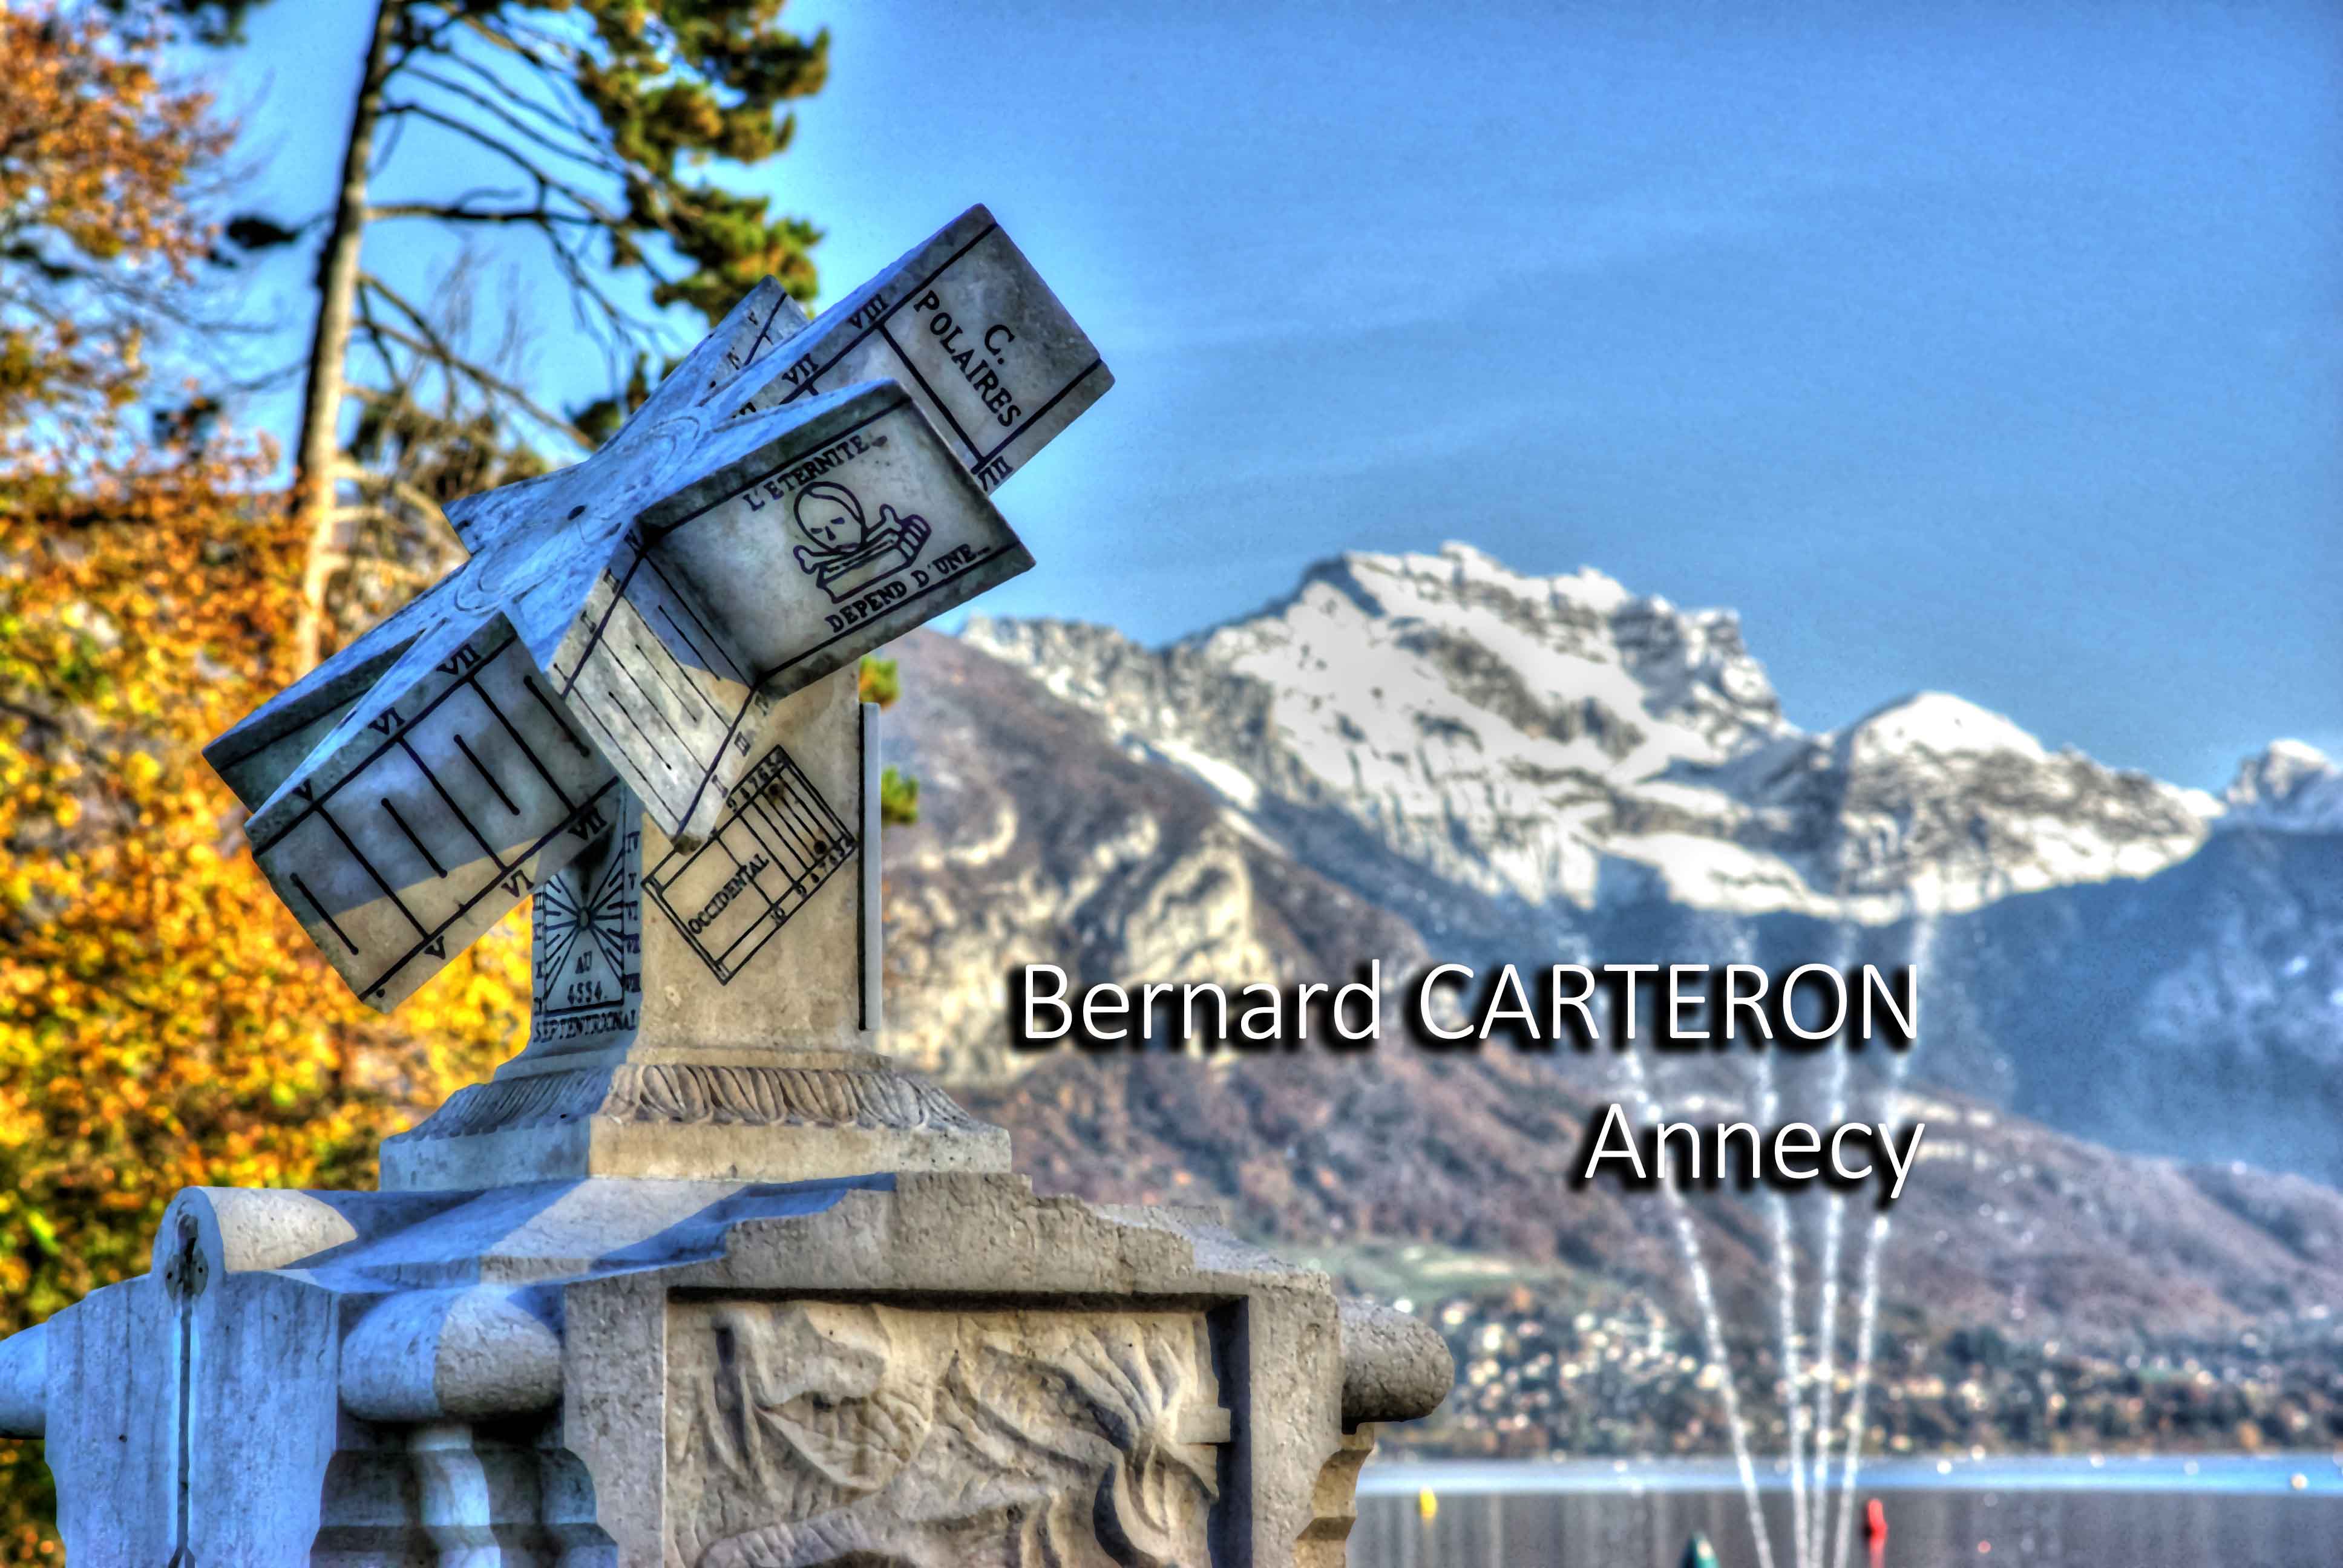 Bernard Carteron  Annecy